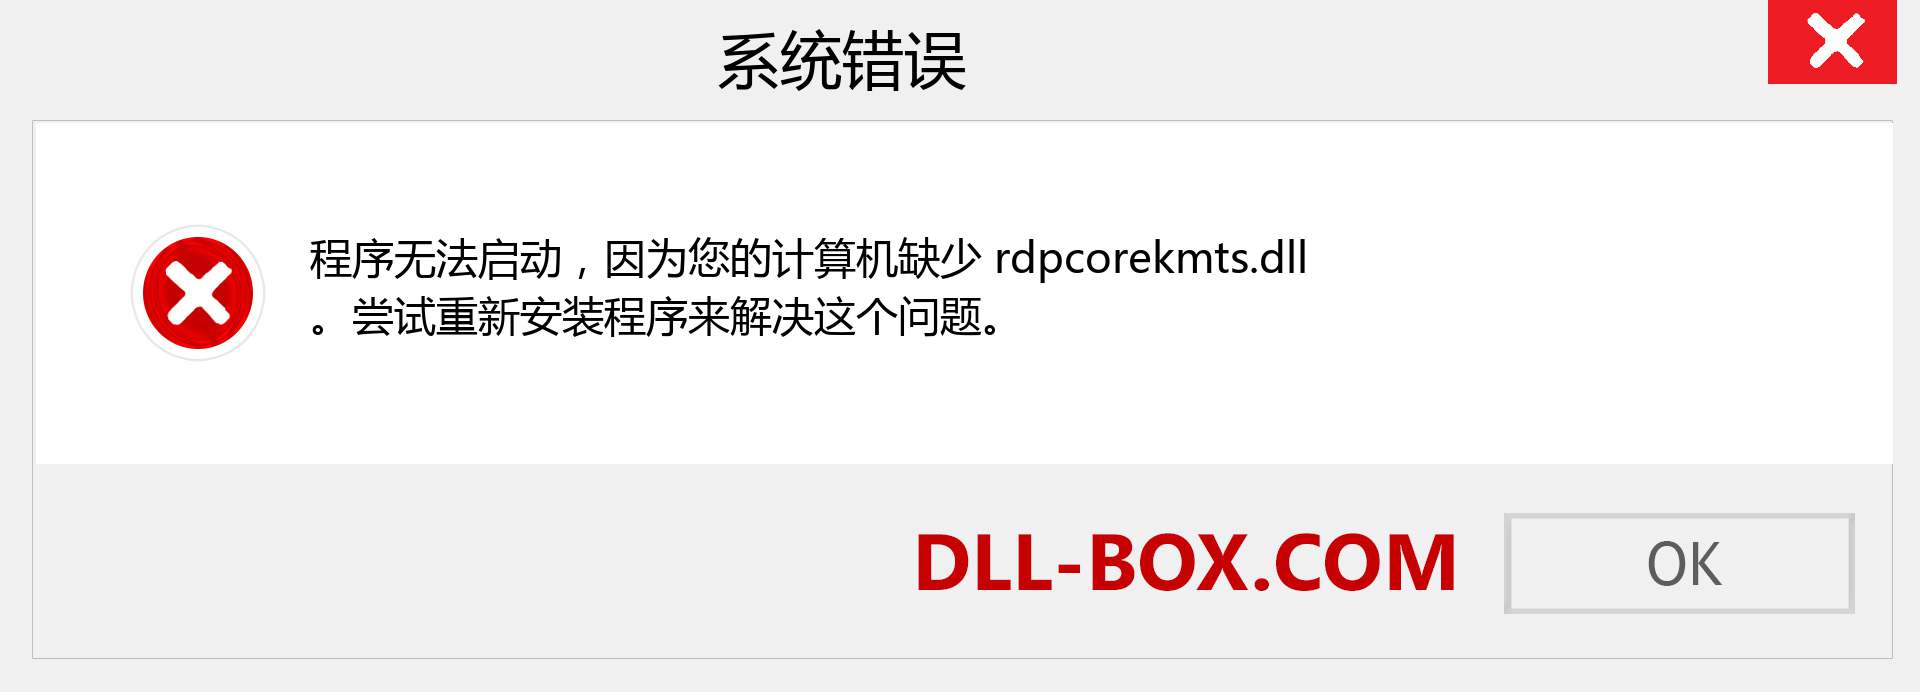 rdpcorekmts.dll 文件丢失？。 适用于 Windows 7、8、10 的下载 - 修复 Windows、照片、图像上的 rdpcorekmts dll 丢失错误